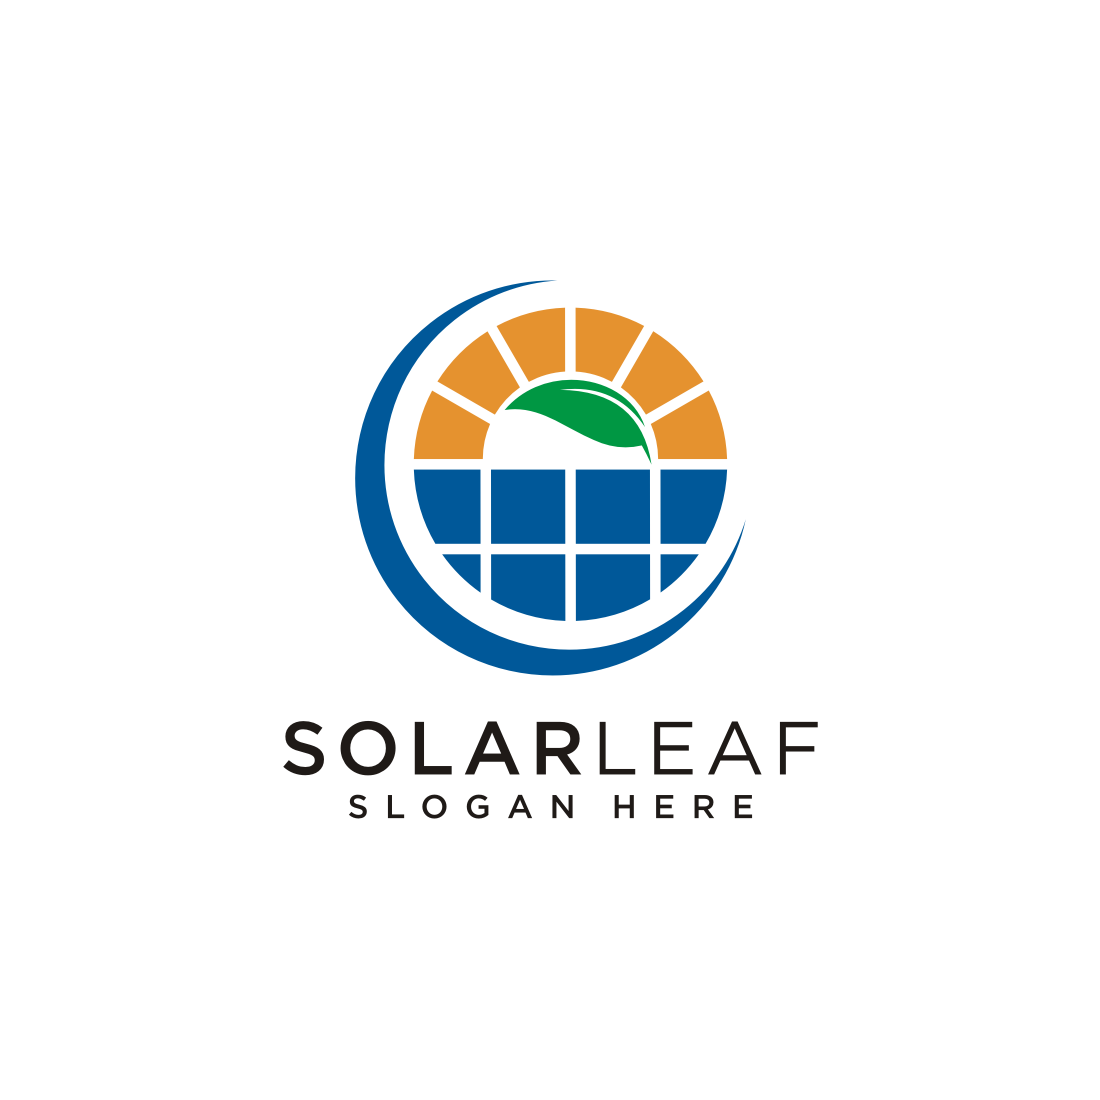 Solar Energy logo design vector cover image.